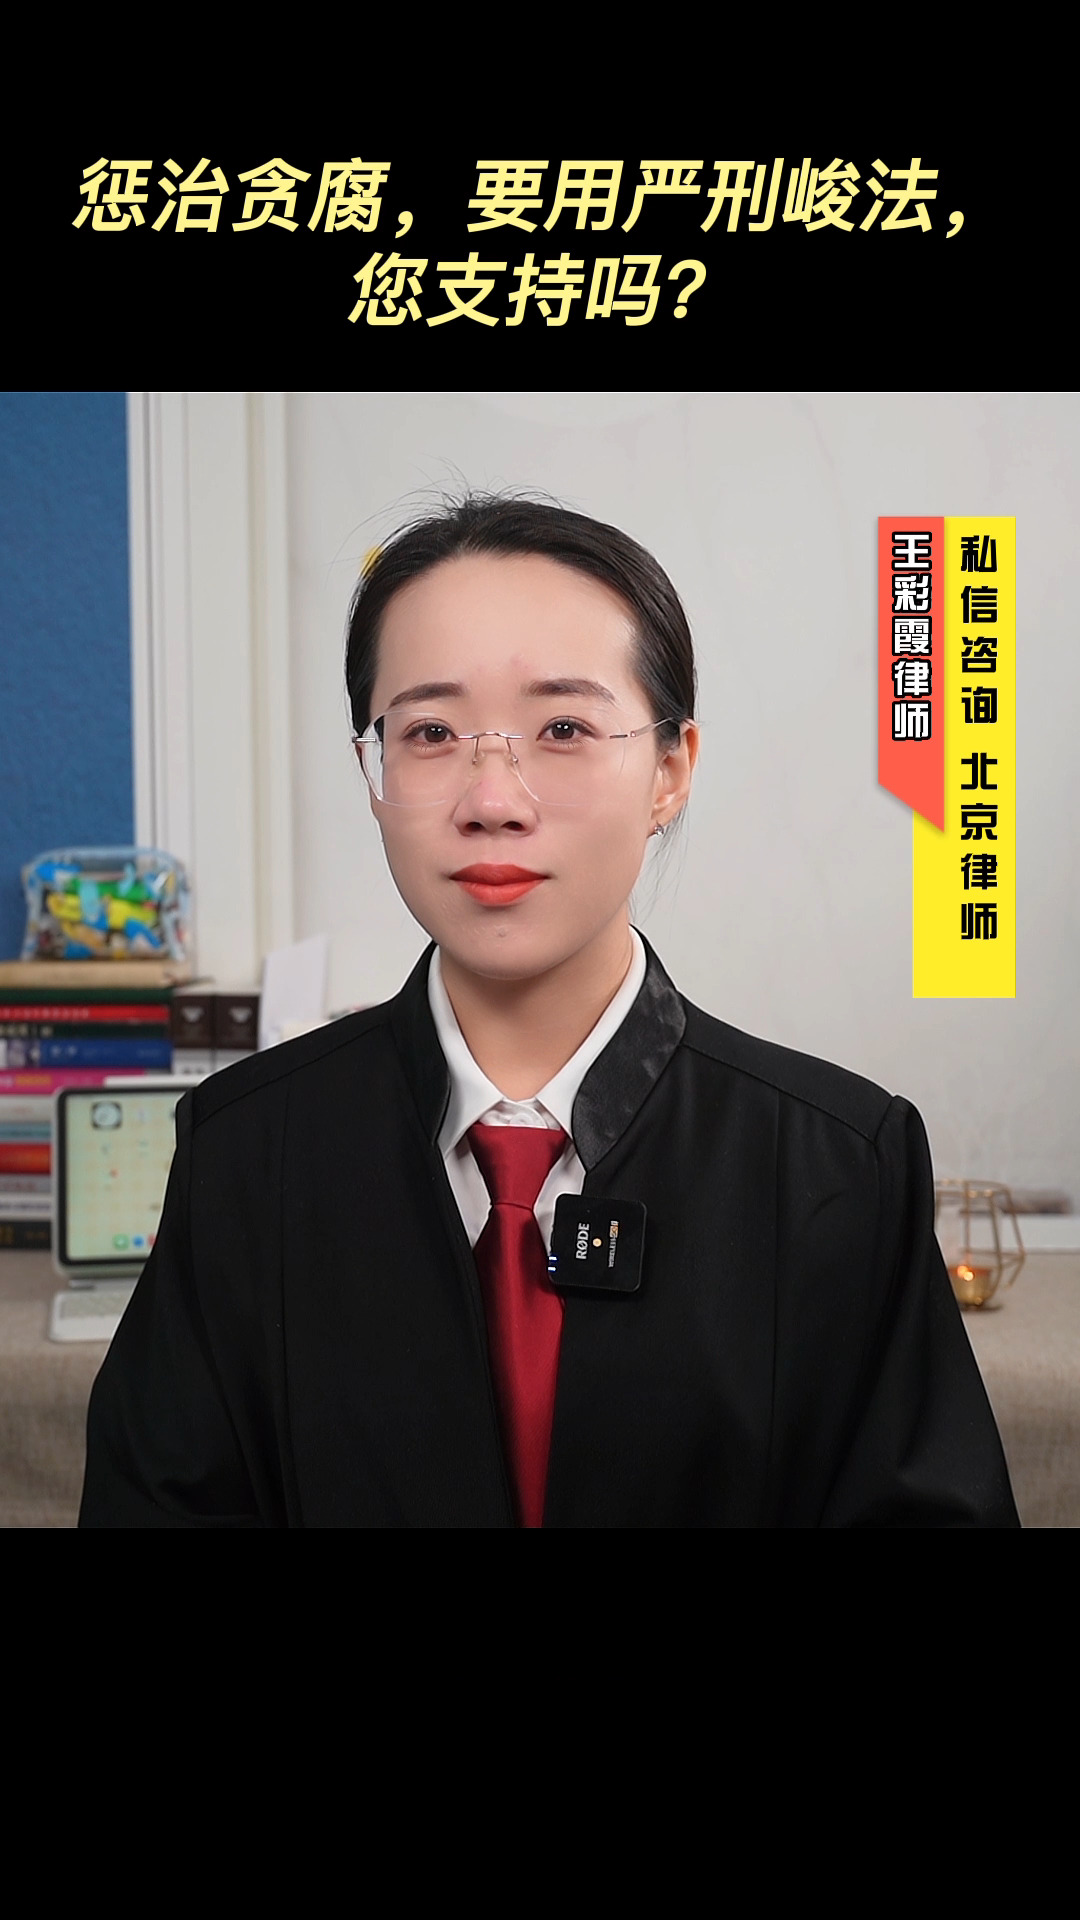 对于贪腐官员不仅要彻查到底，更要用严刑峻法。#法律咨询 #北京王彩霞律师#普法 